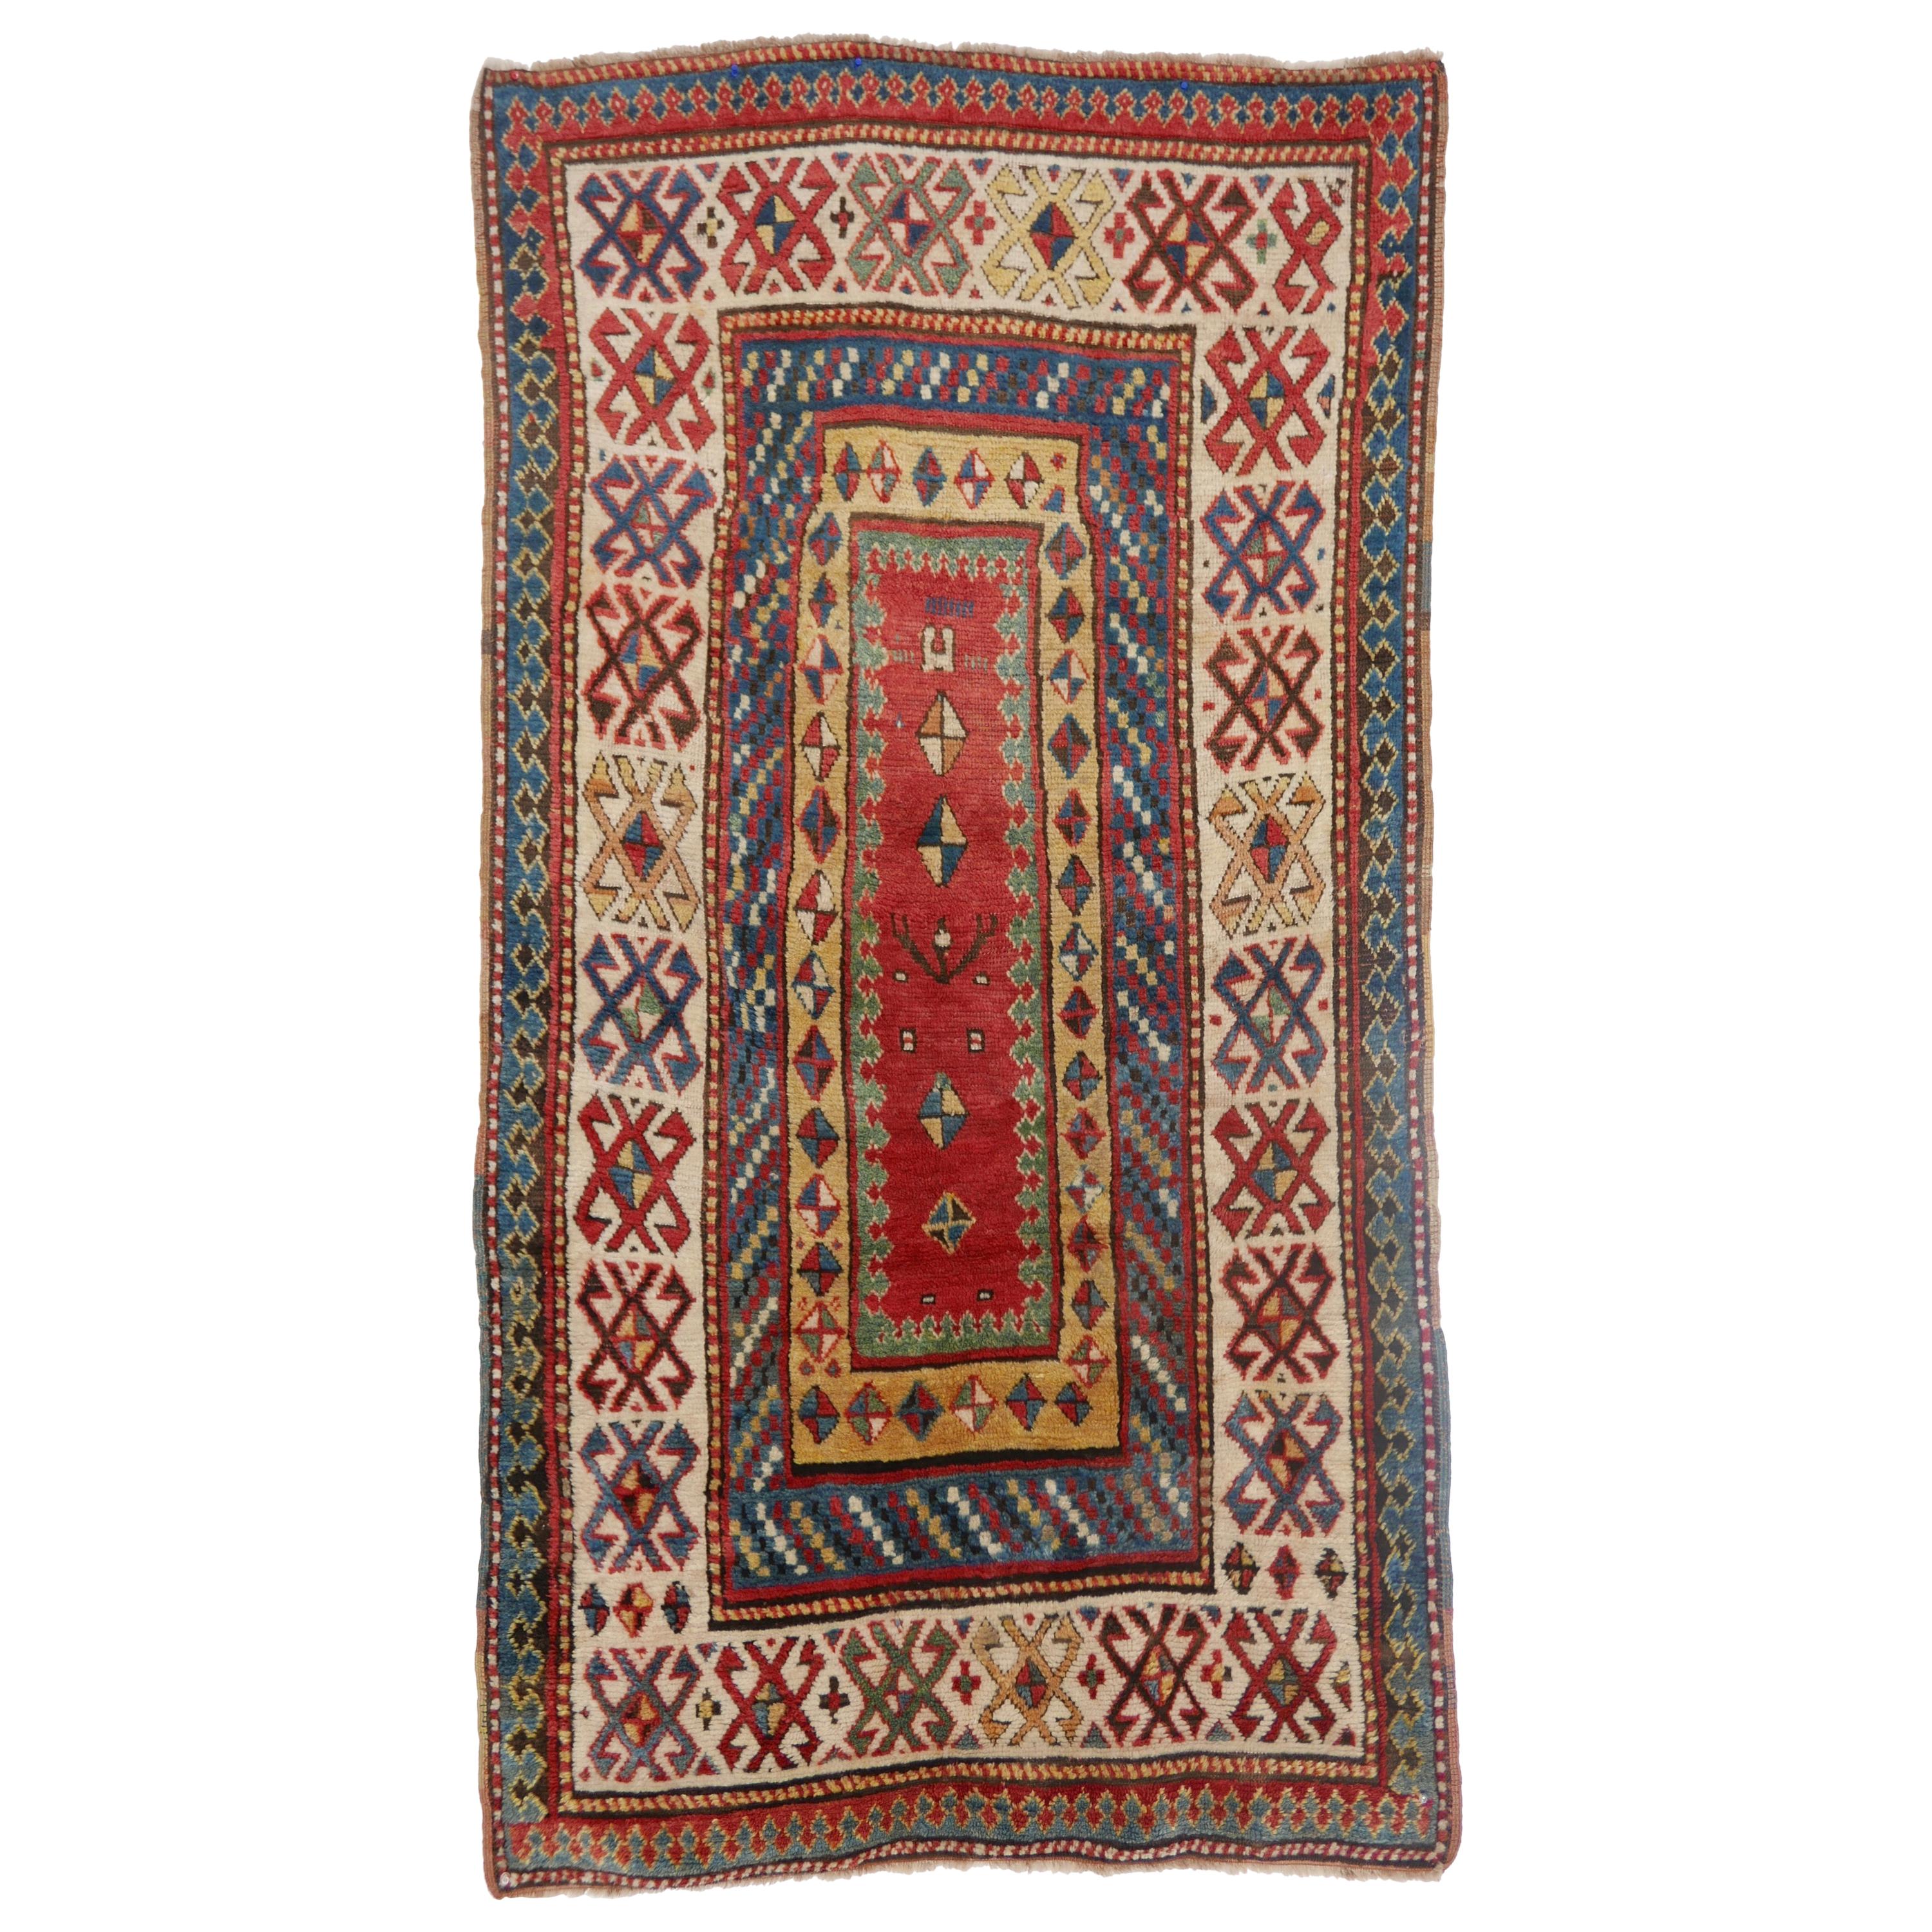 Antique Kazak Wool Rug, 19th Century Kazakhstan